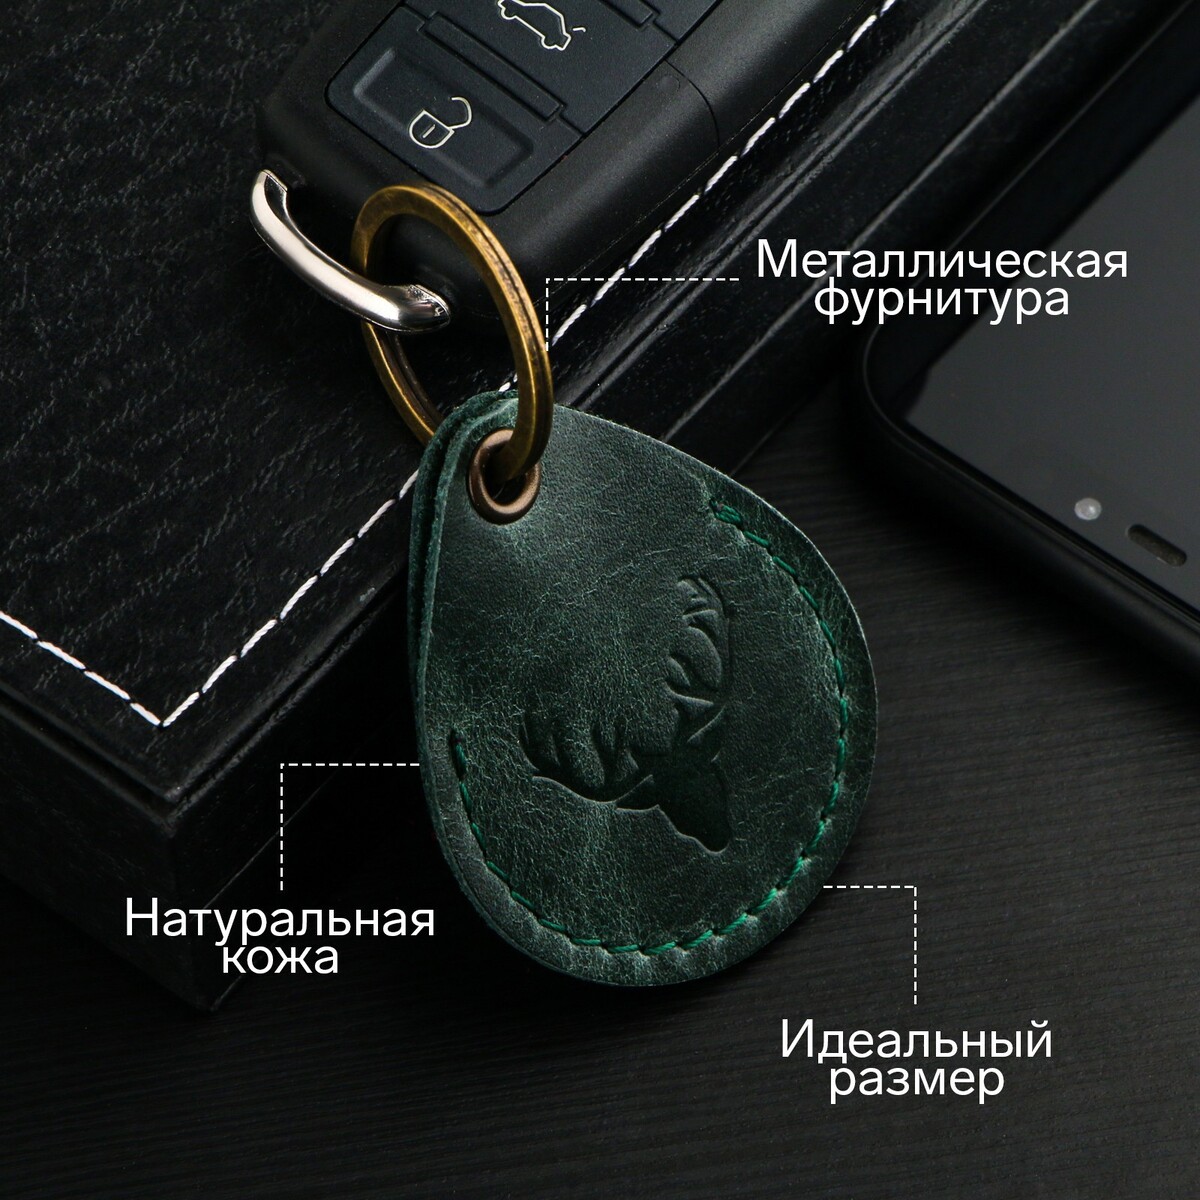 Брелок для автомобильного ключа, метка, капля, натуральная кожа, зеленый, олень No brand 03157561 - фото 1